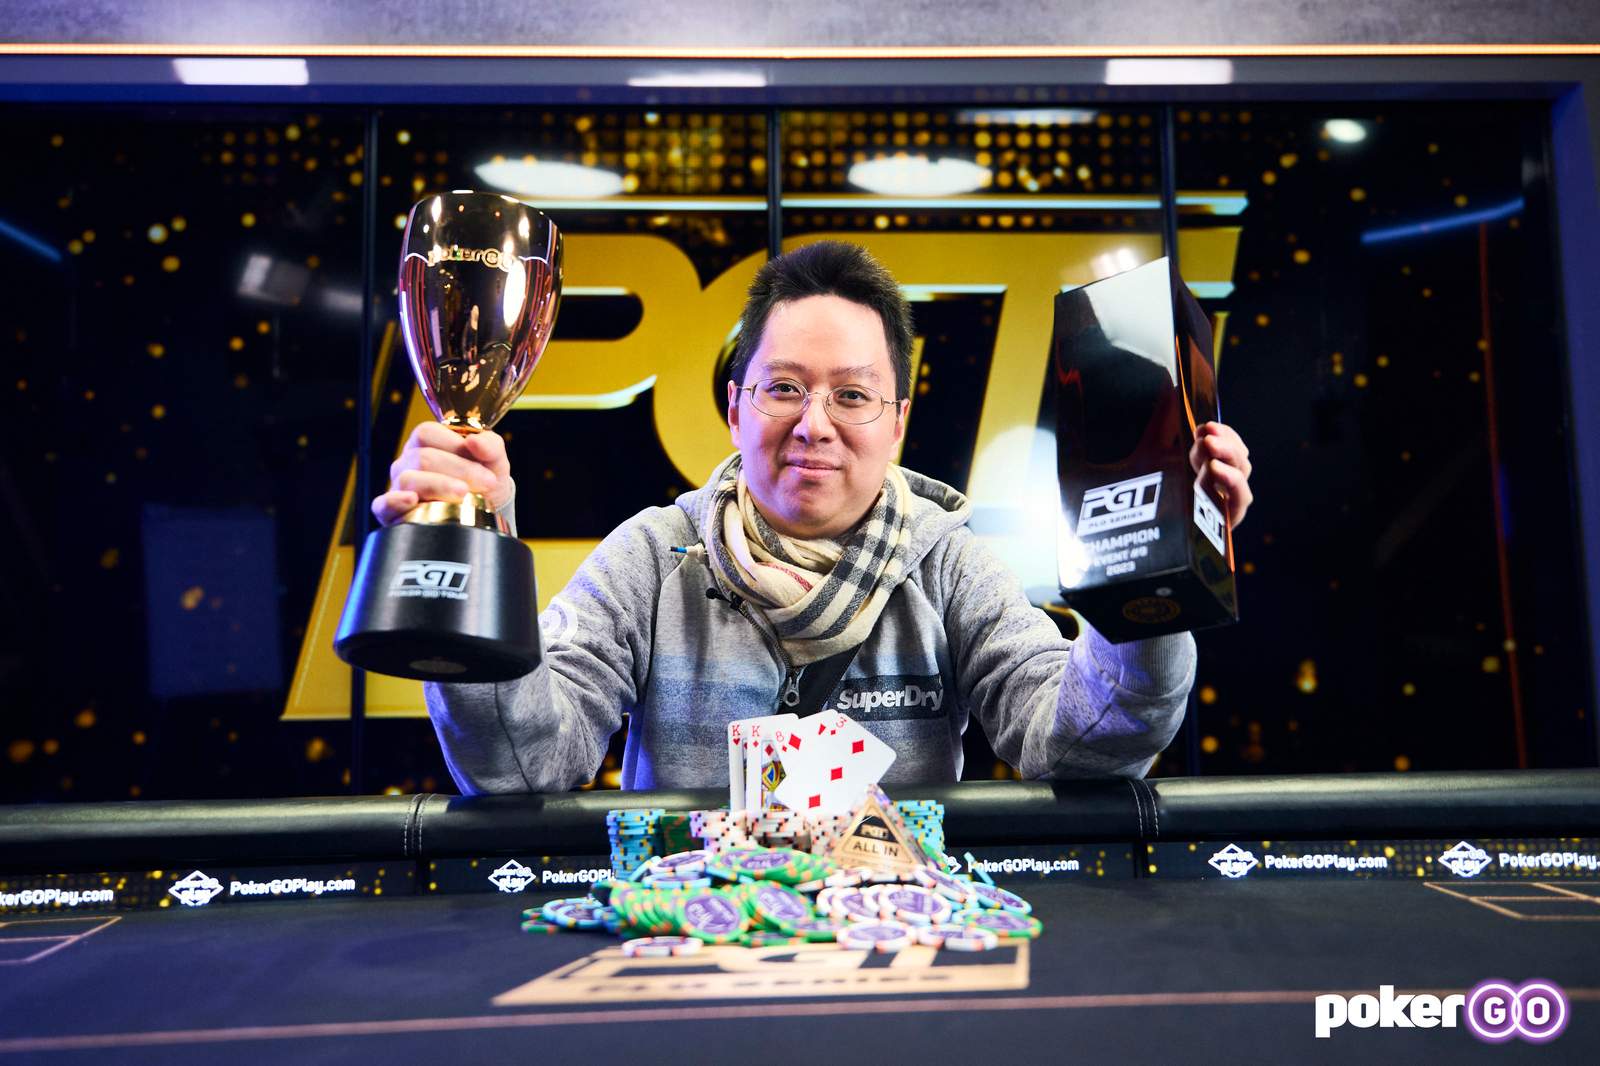 Daniel Geeng Wins PLO Series II Event #9 for $487,500